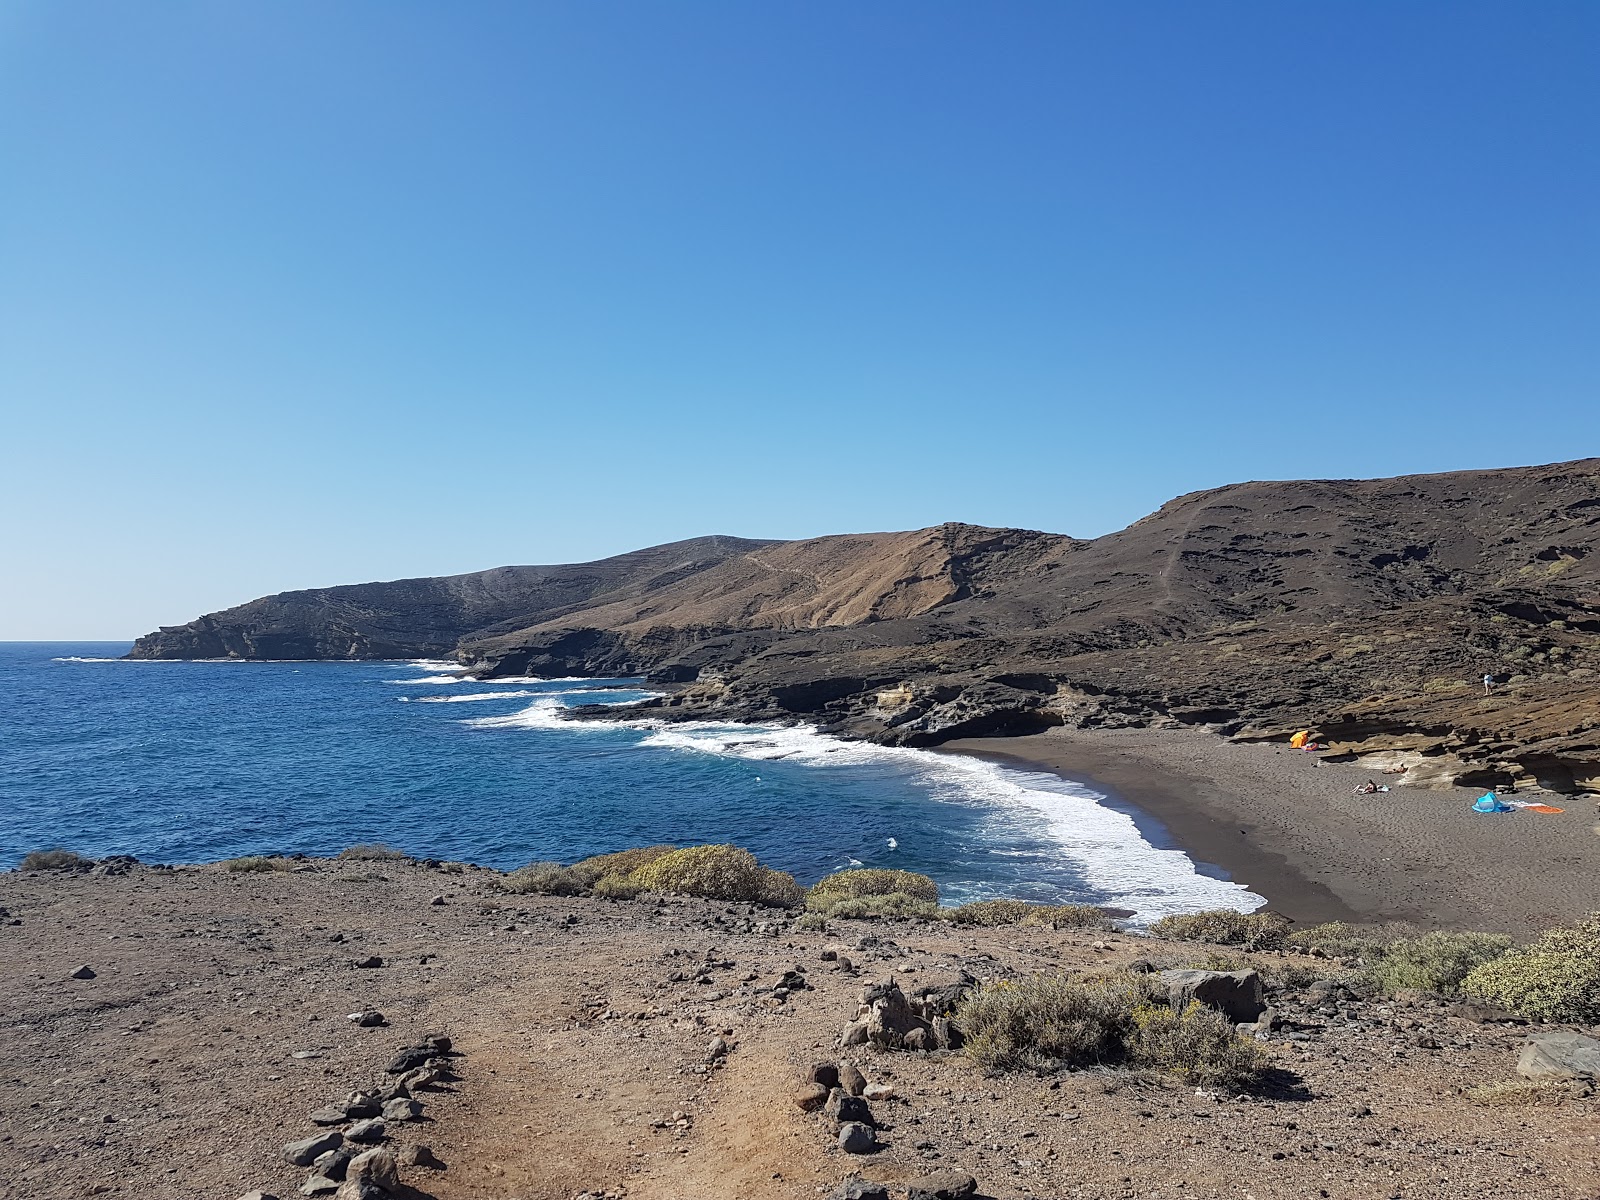 Foto av Playa Escondida med brunsand yta